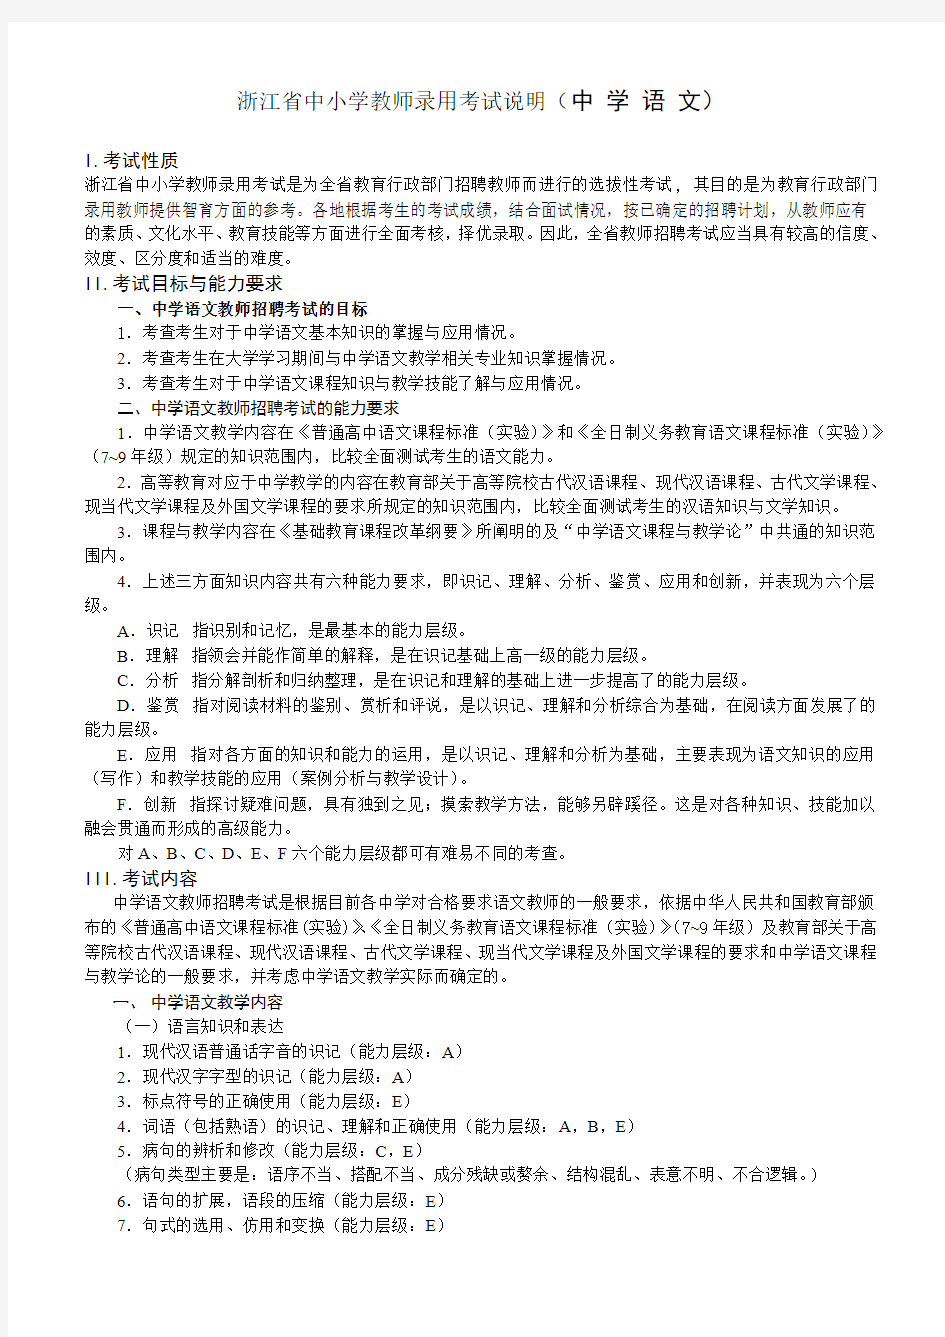 2013浙江省中小学教师录用考试中学语文考试说明